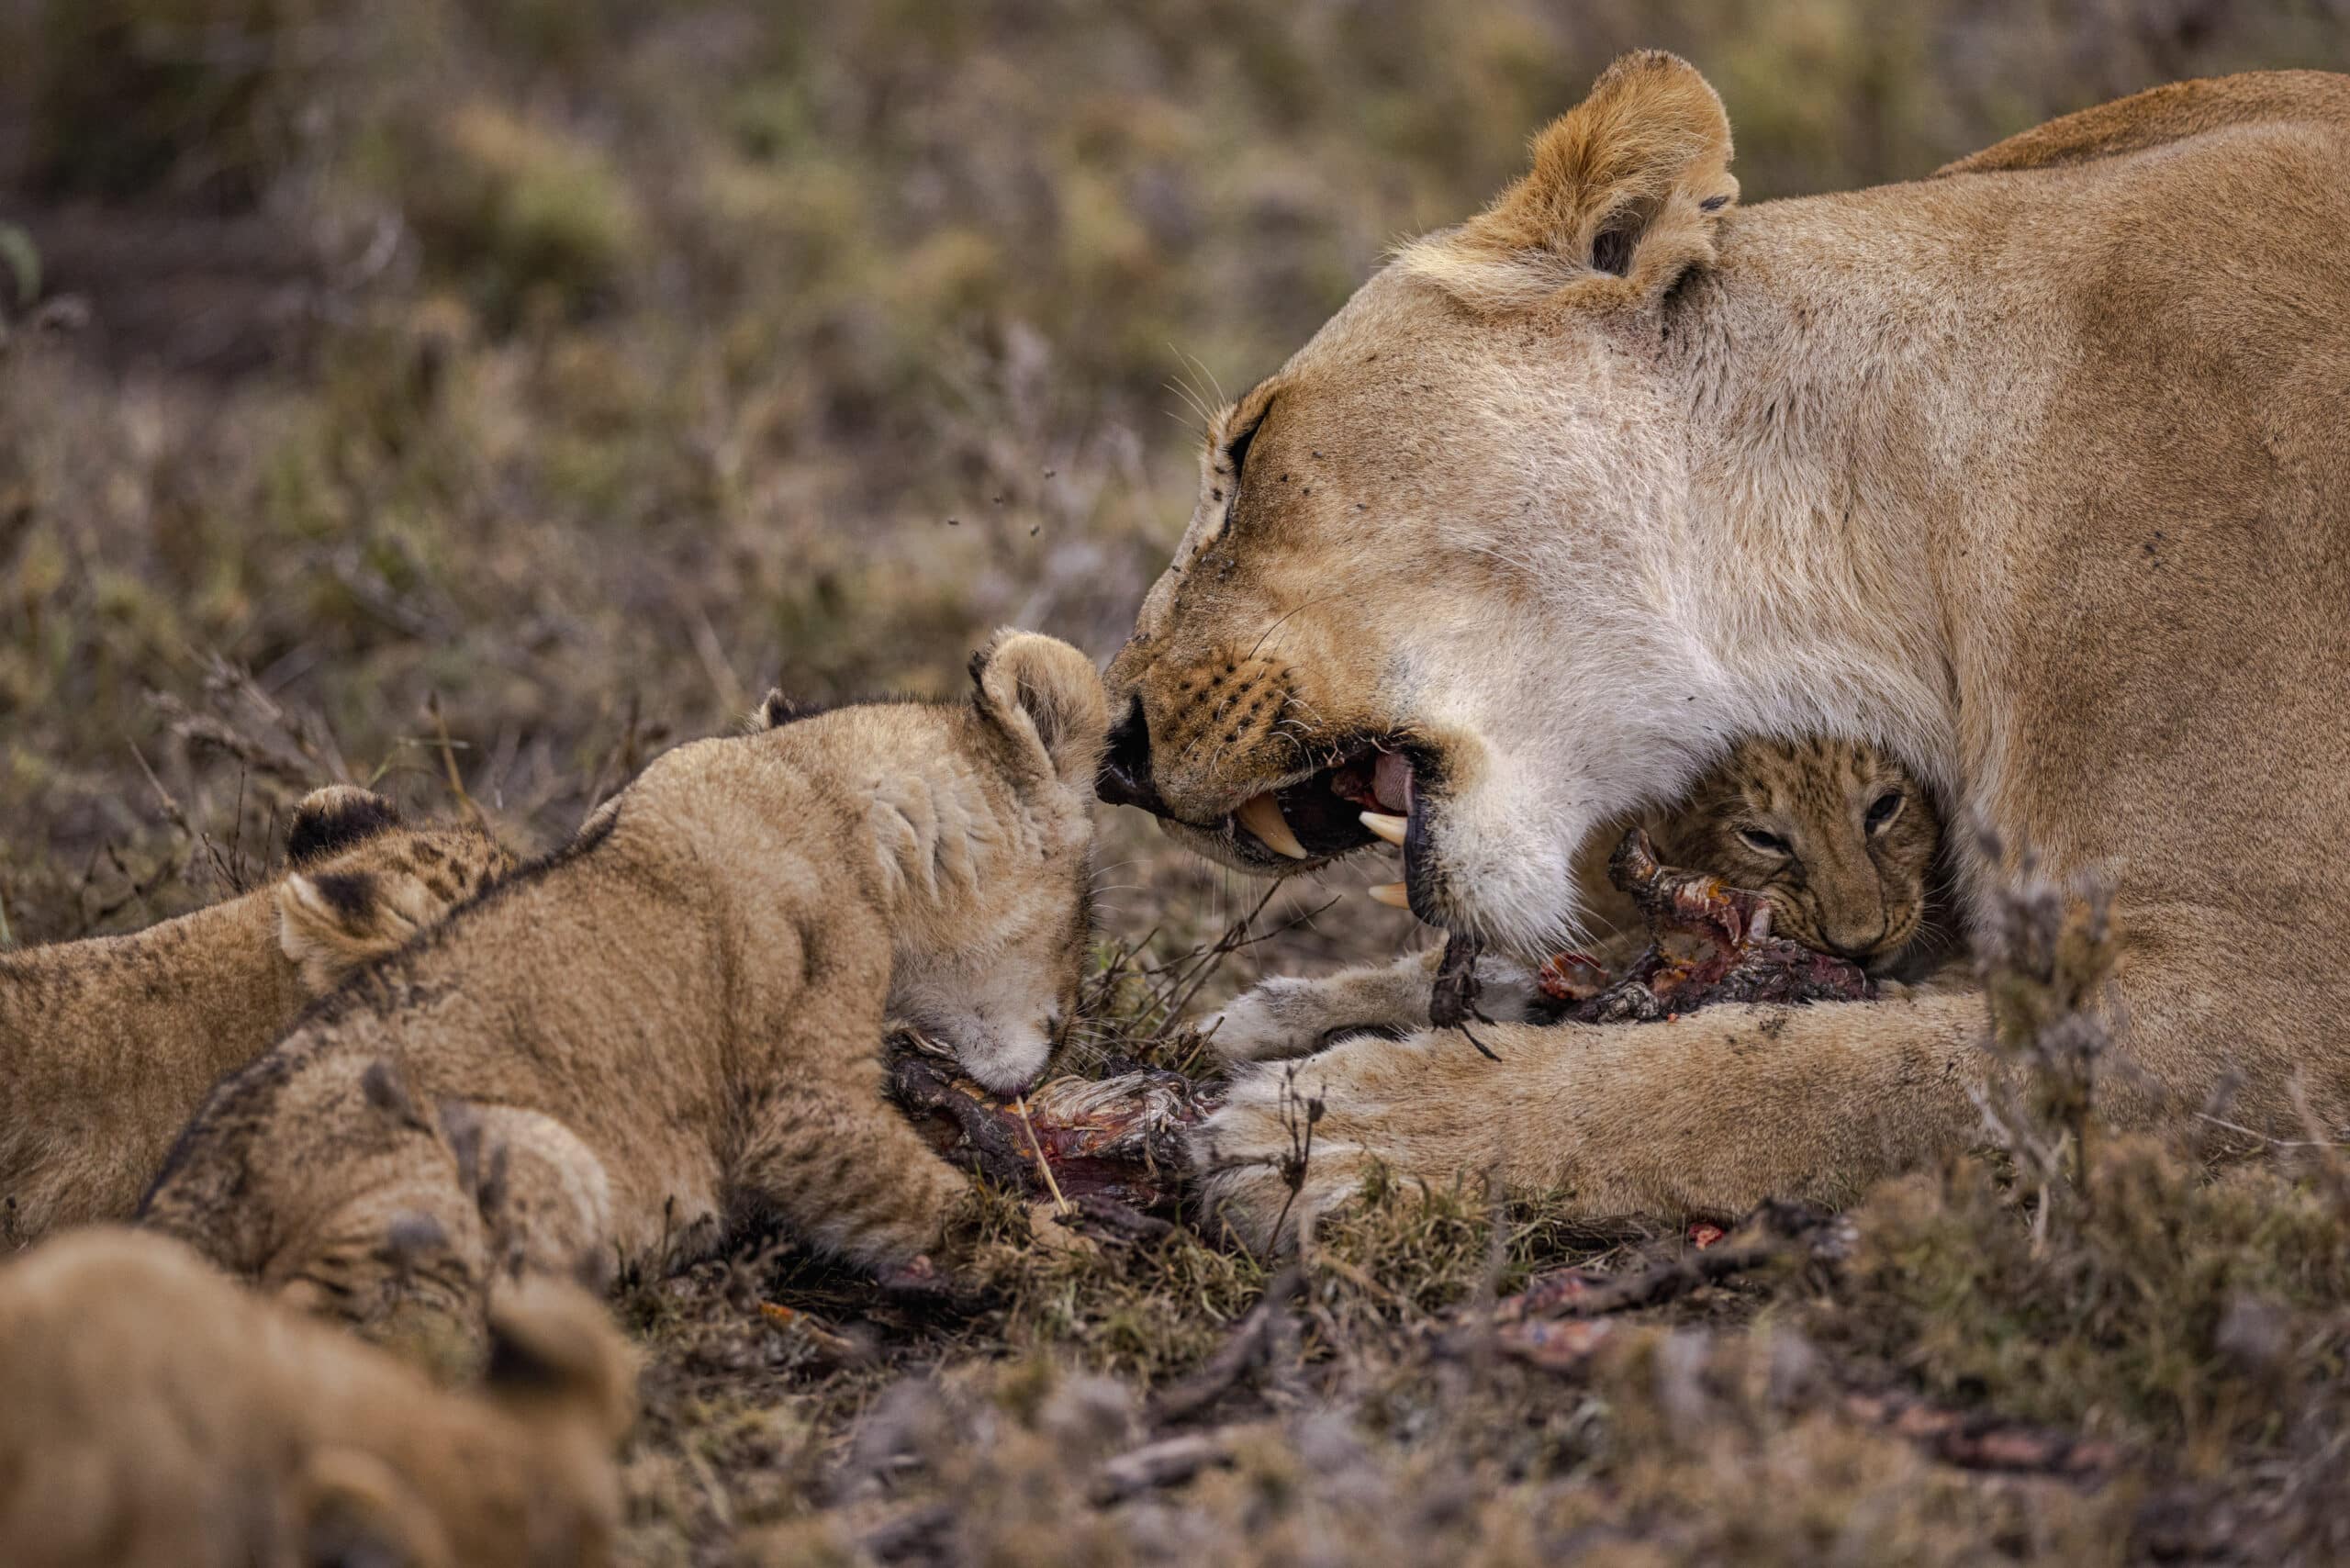 Eine Löwin ernährt sich in einer Graslandschaft von einem Kadaver und hat neben sich zwei Junge. Dies ist der Ausdruck eines Moments der Zuneigung in der Wildnis. © Fotografie Tomas Rodriguez